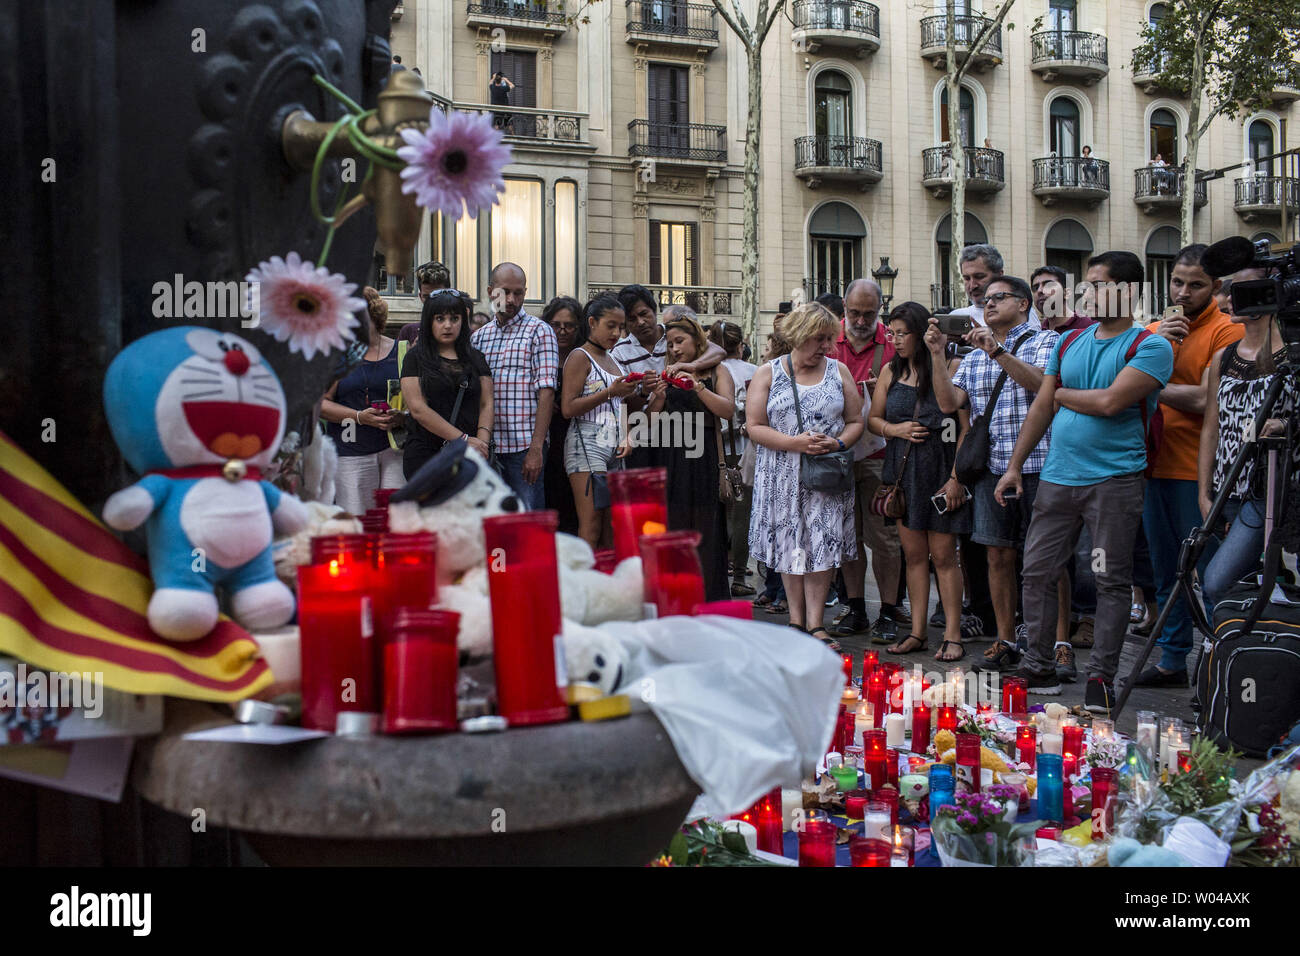 Menschen stehen neben Blumen, Kerzen und andere Gegenstände auf die Font de Canaletes in Barcelona, als Sie erinnert an die Opfer des Barcelona angriff, einen Tag nach dem van in die Menge gepflügt, 14 Personen getötet und über 100 verletzt wurden am 18. August 2017. Die Fahrer haben am 17. August 2017 gepflügt. Foto von Angel Garcia/UPI Stockfoto